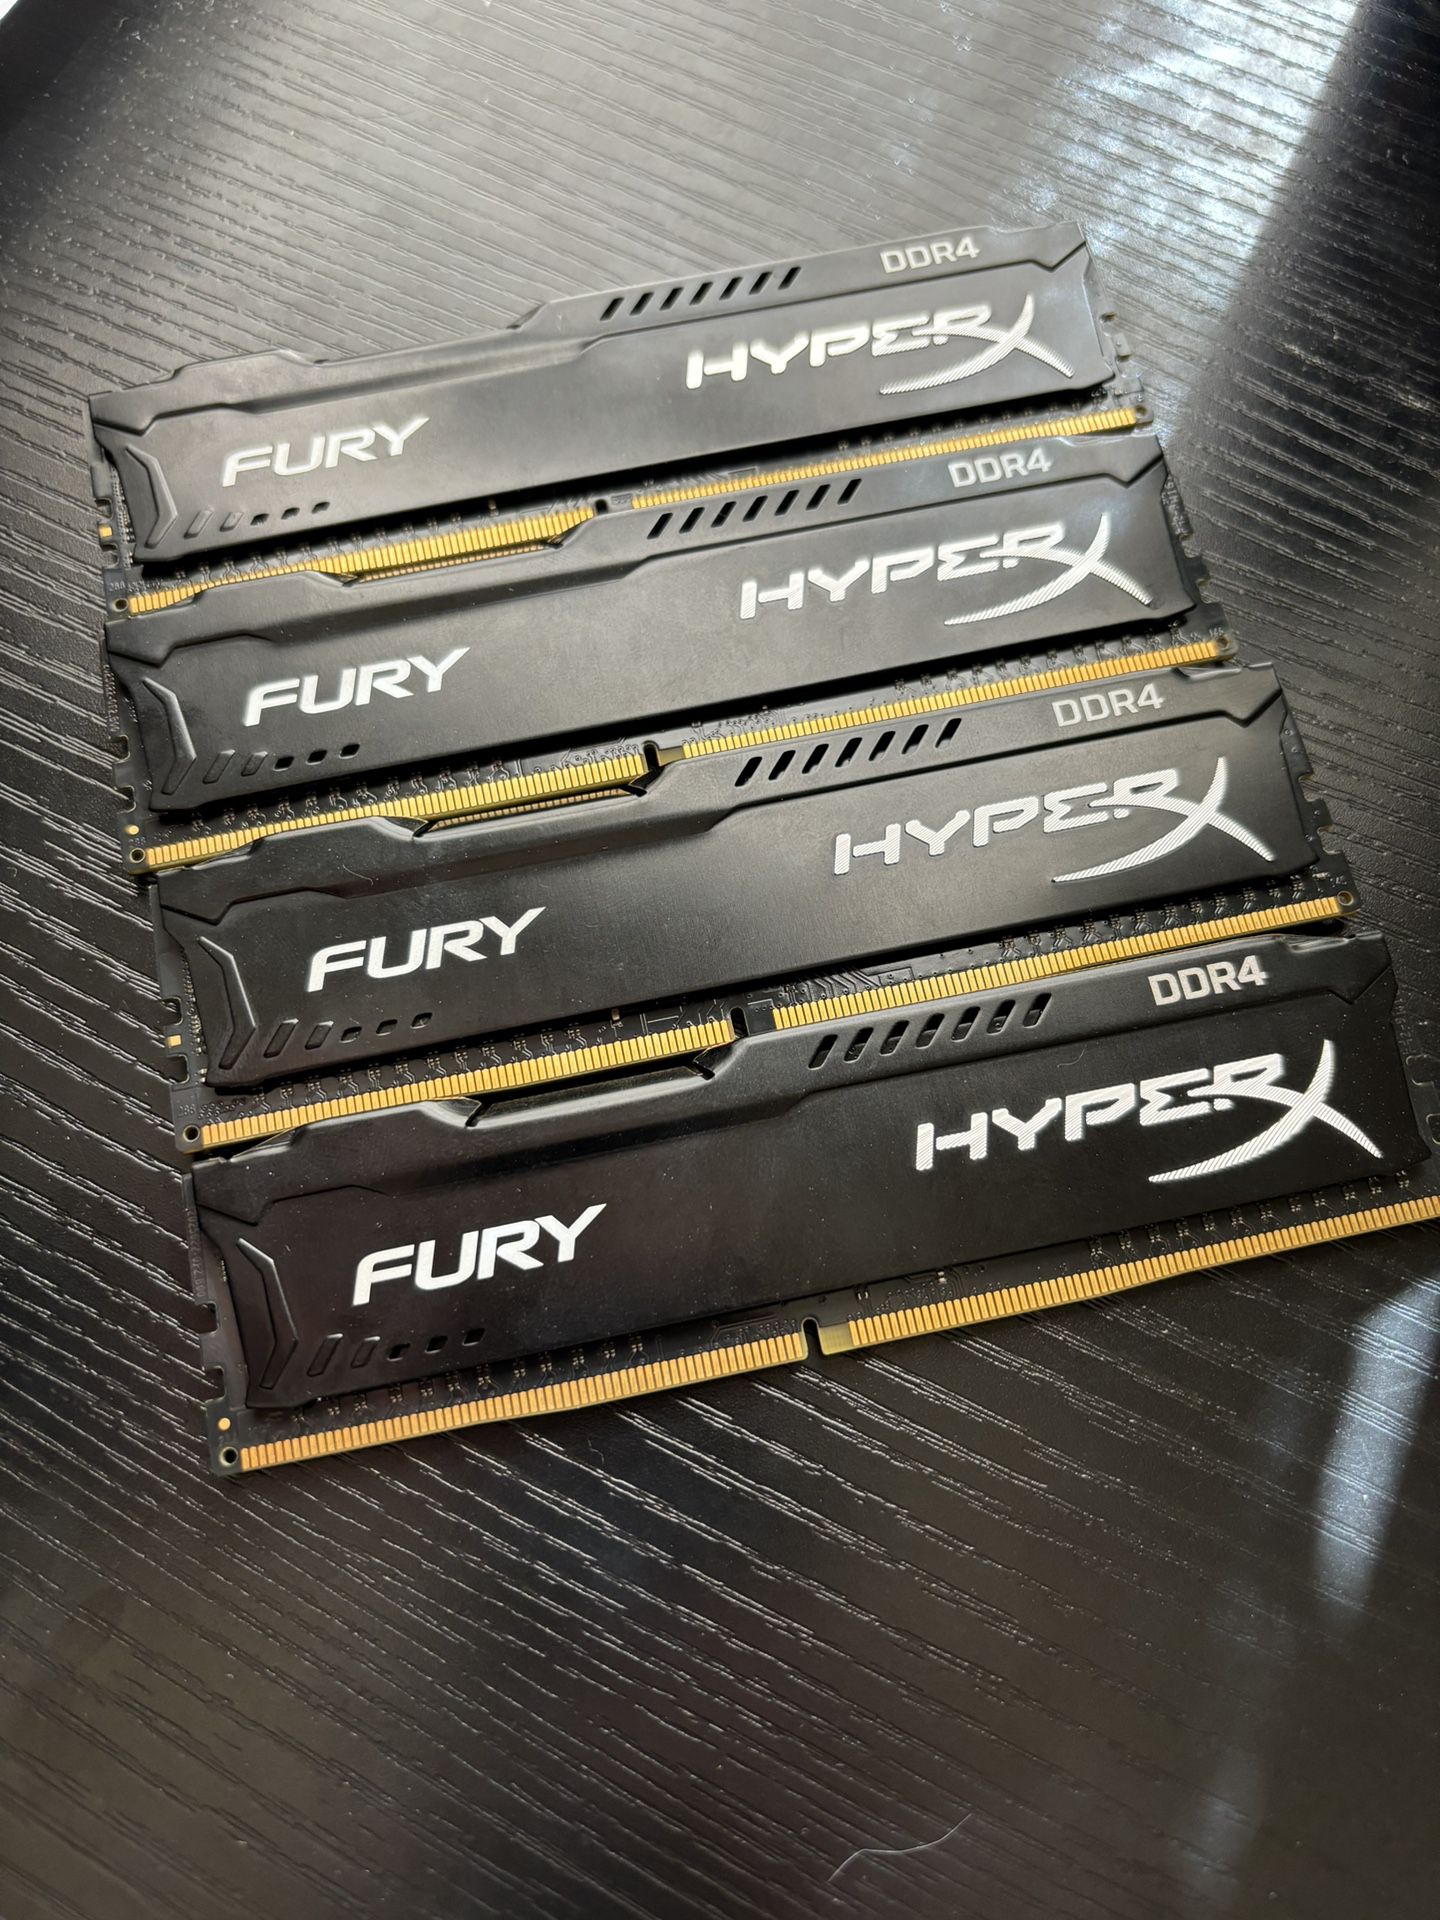 HyperX Fury RAM Sticks For Computers 16GB DDR4